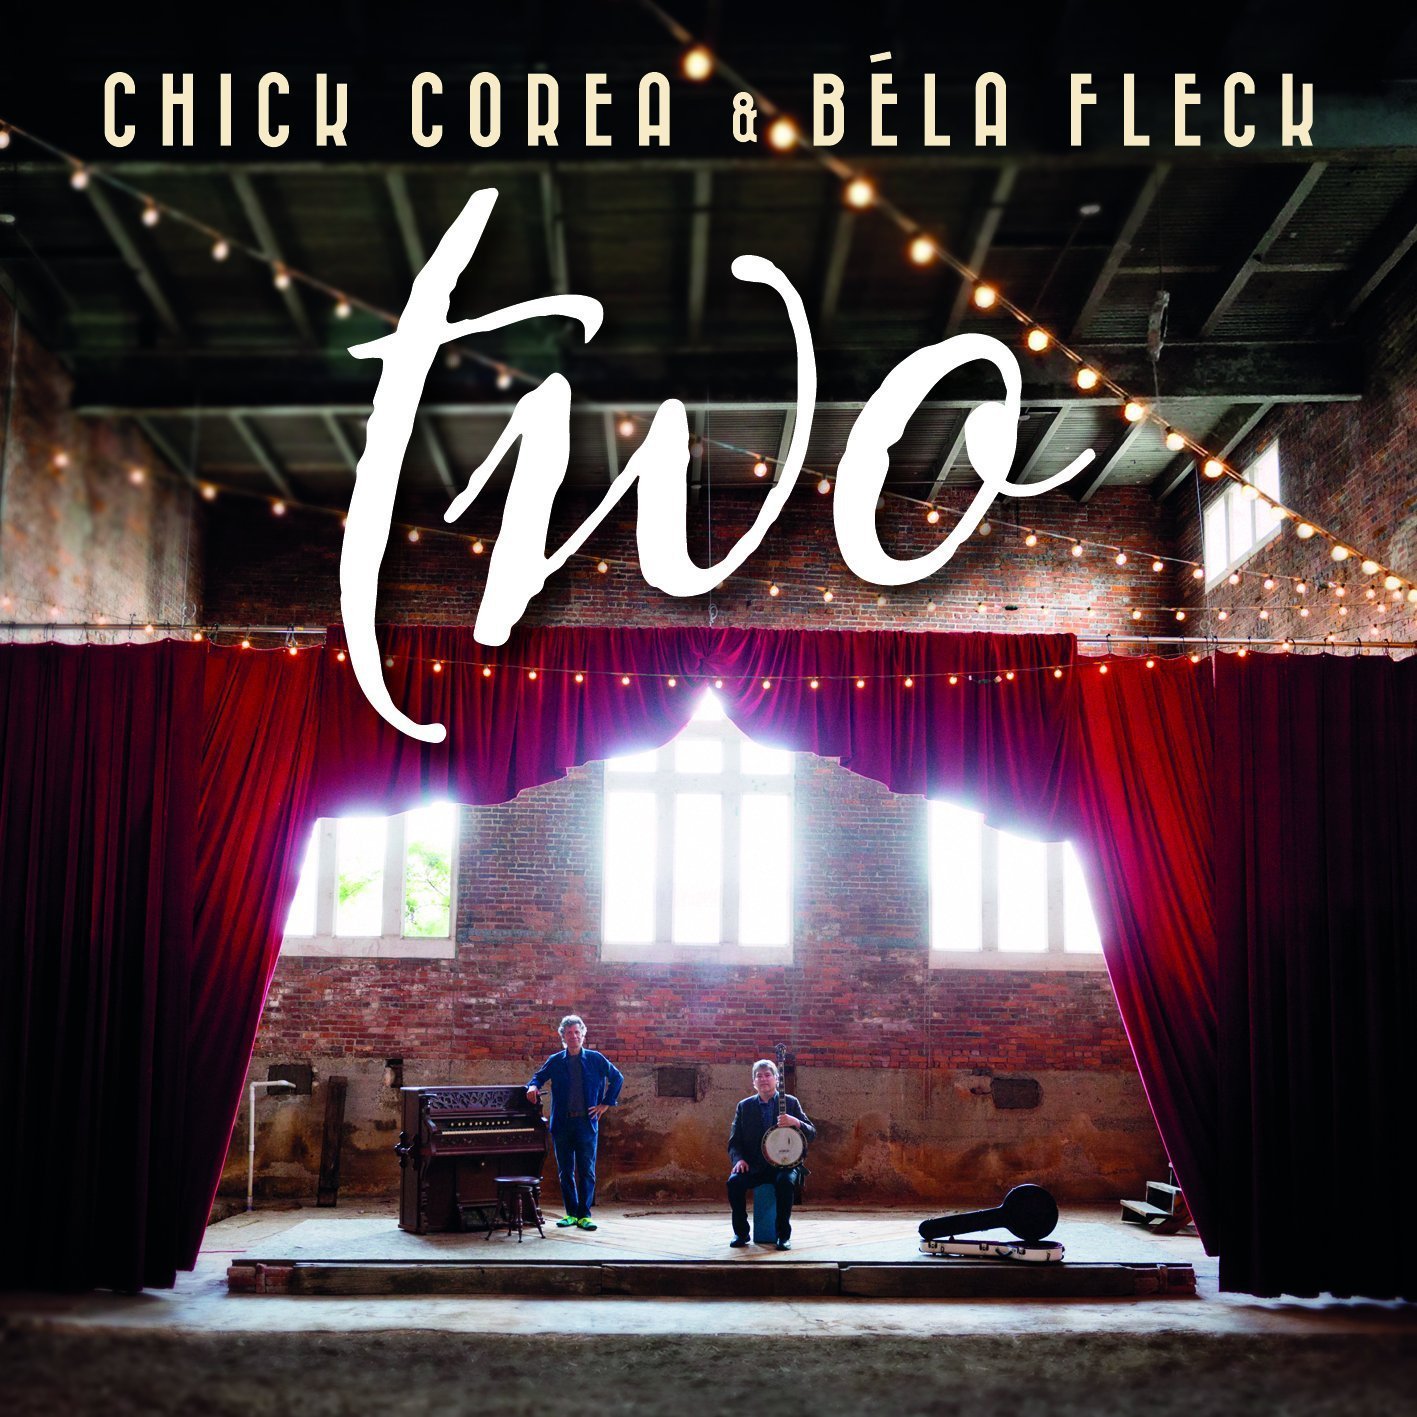 Chick Corea and Bela Fleck - Two (2015) [AcousticSounds FLAC 24bit/96kHz]